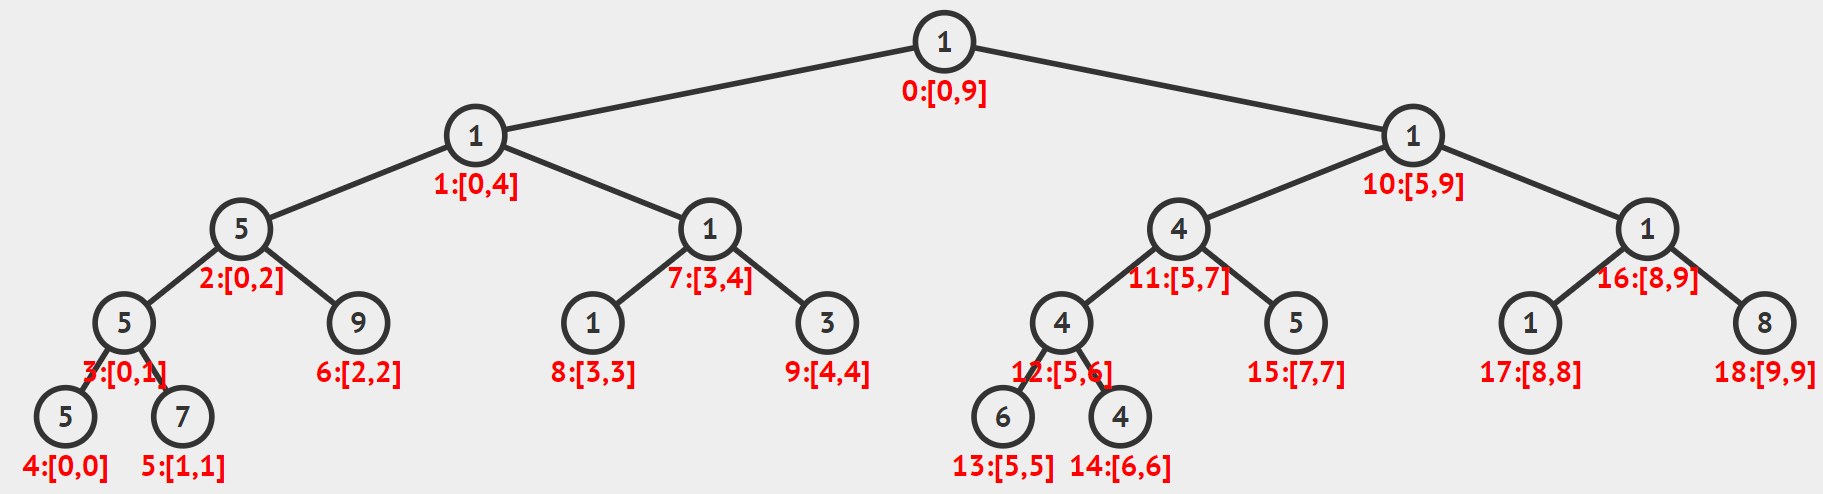 按照先序遍历进行编号的线段树